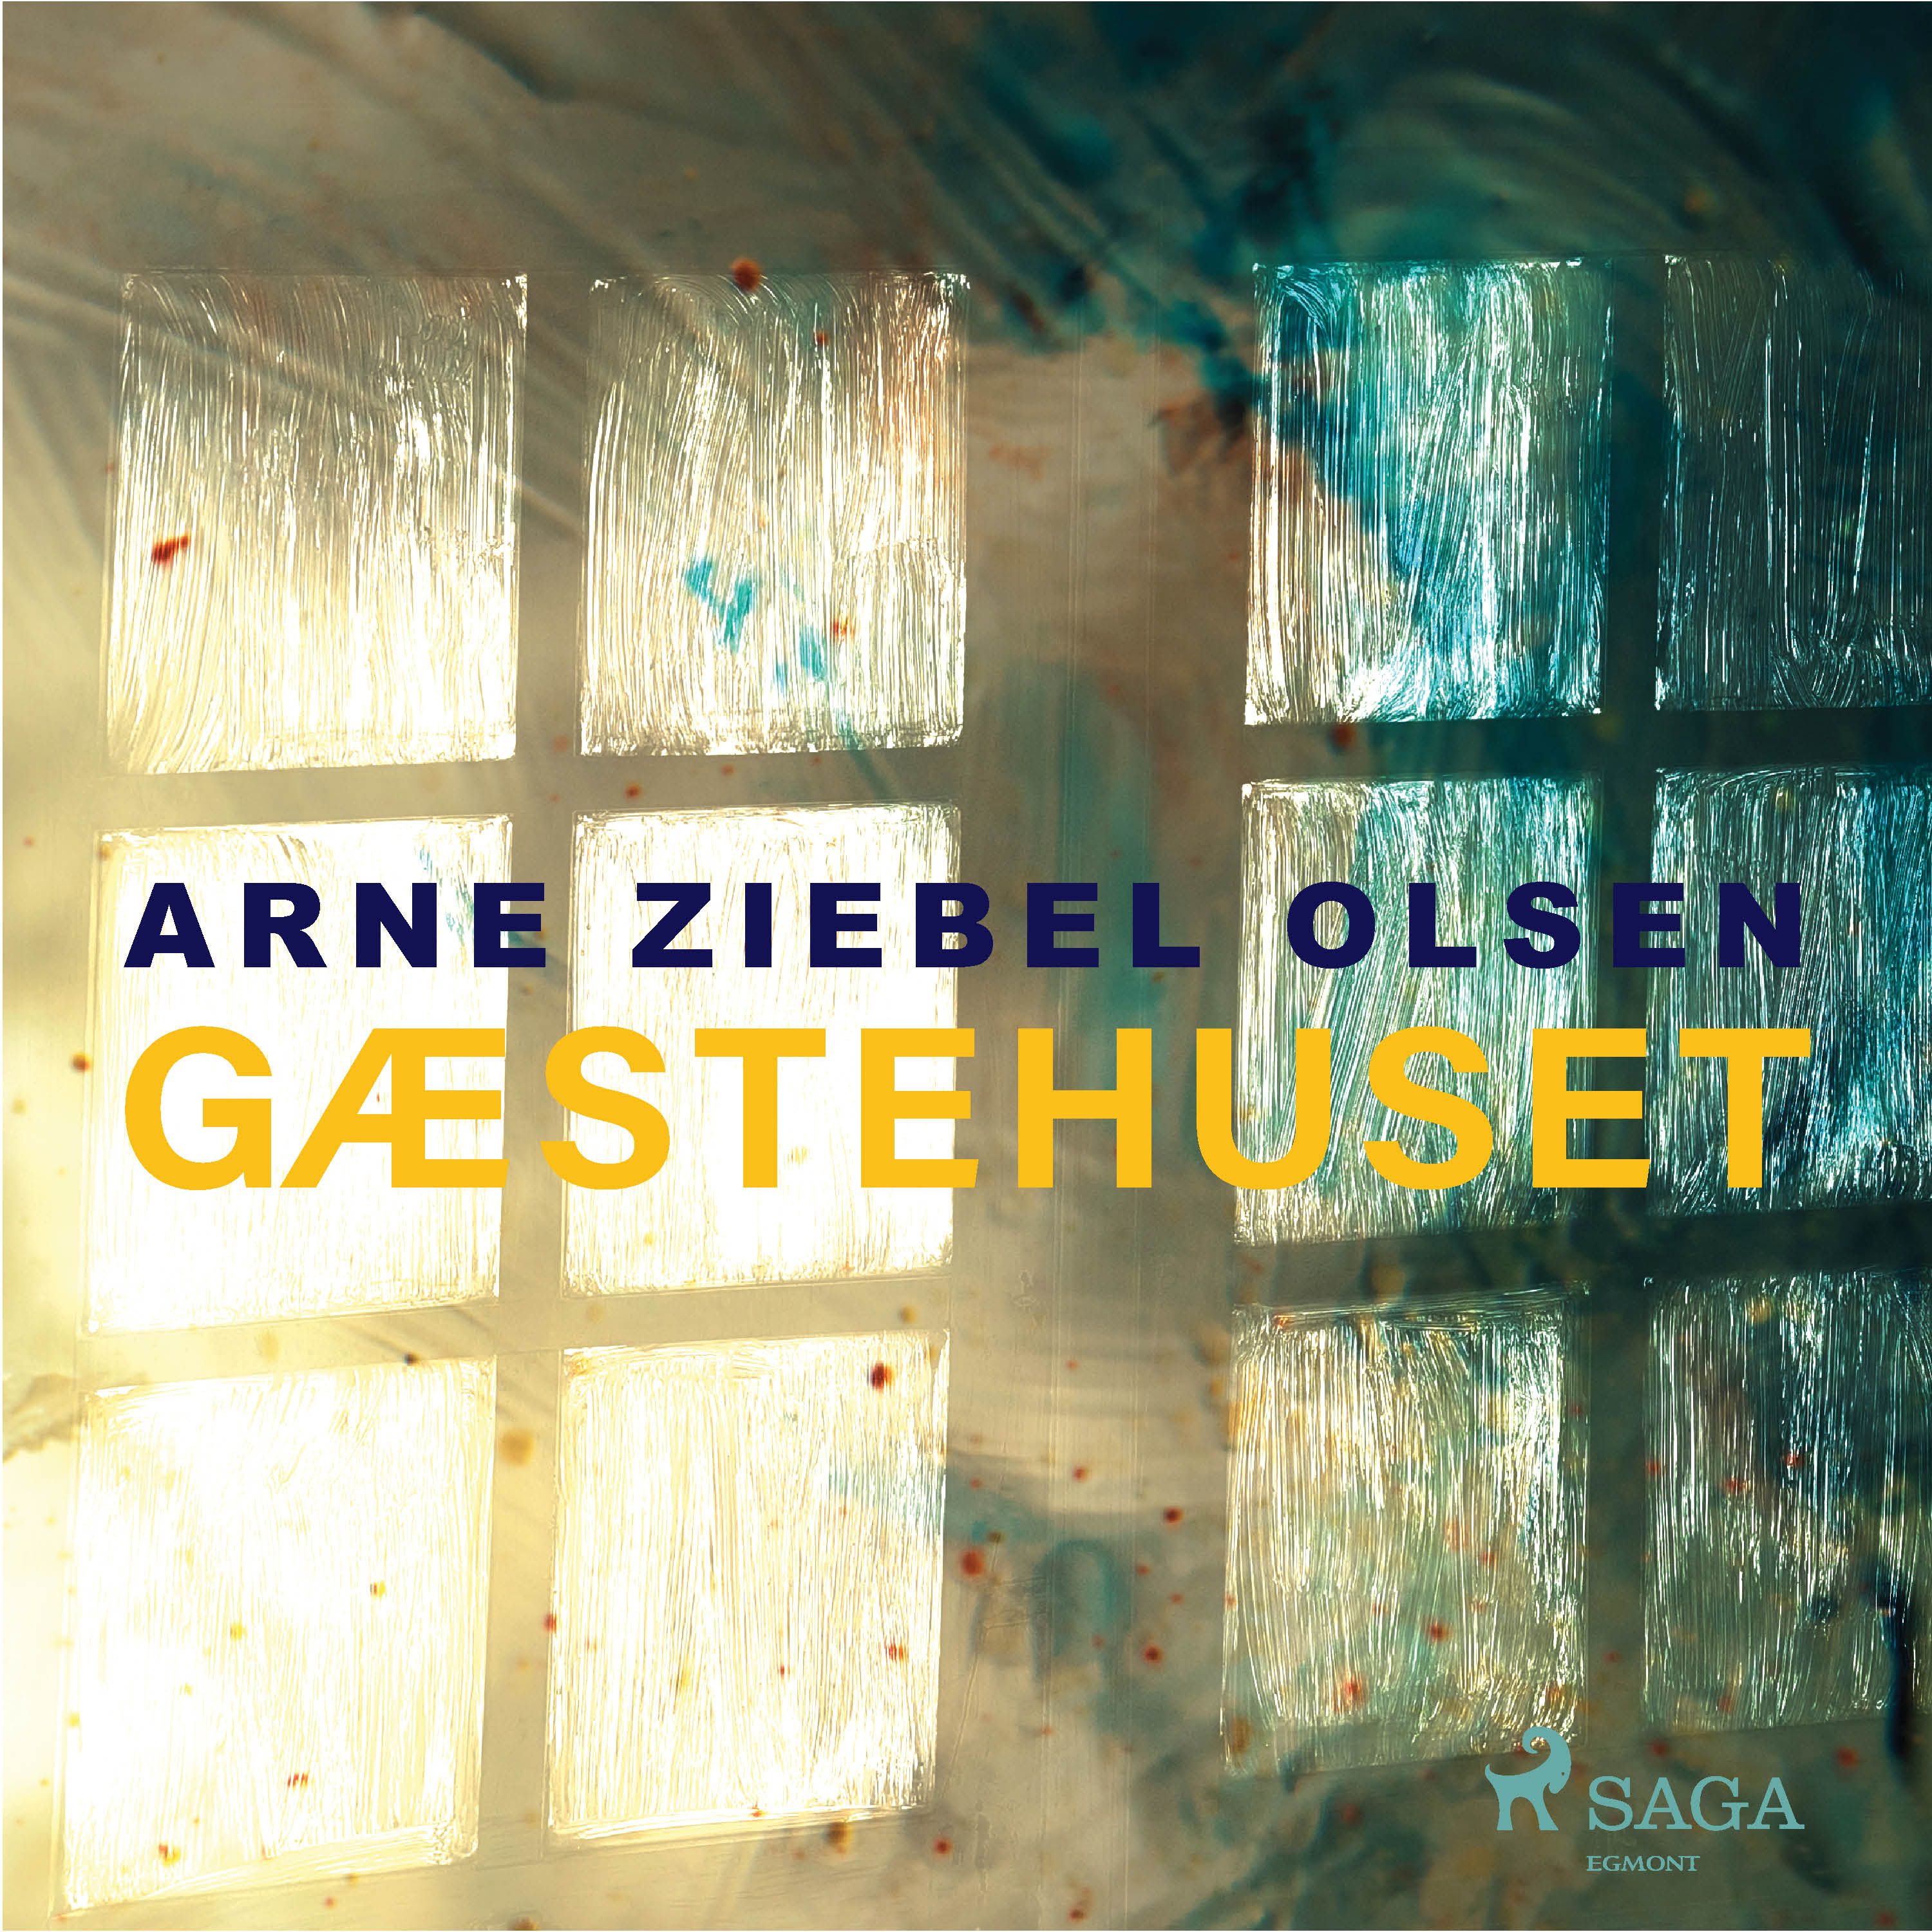 Gæstehuset, audiobook by Arne Ziebel Olsen